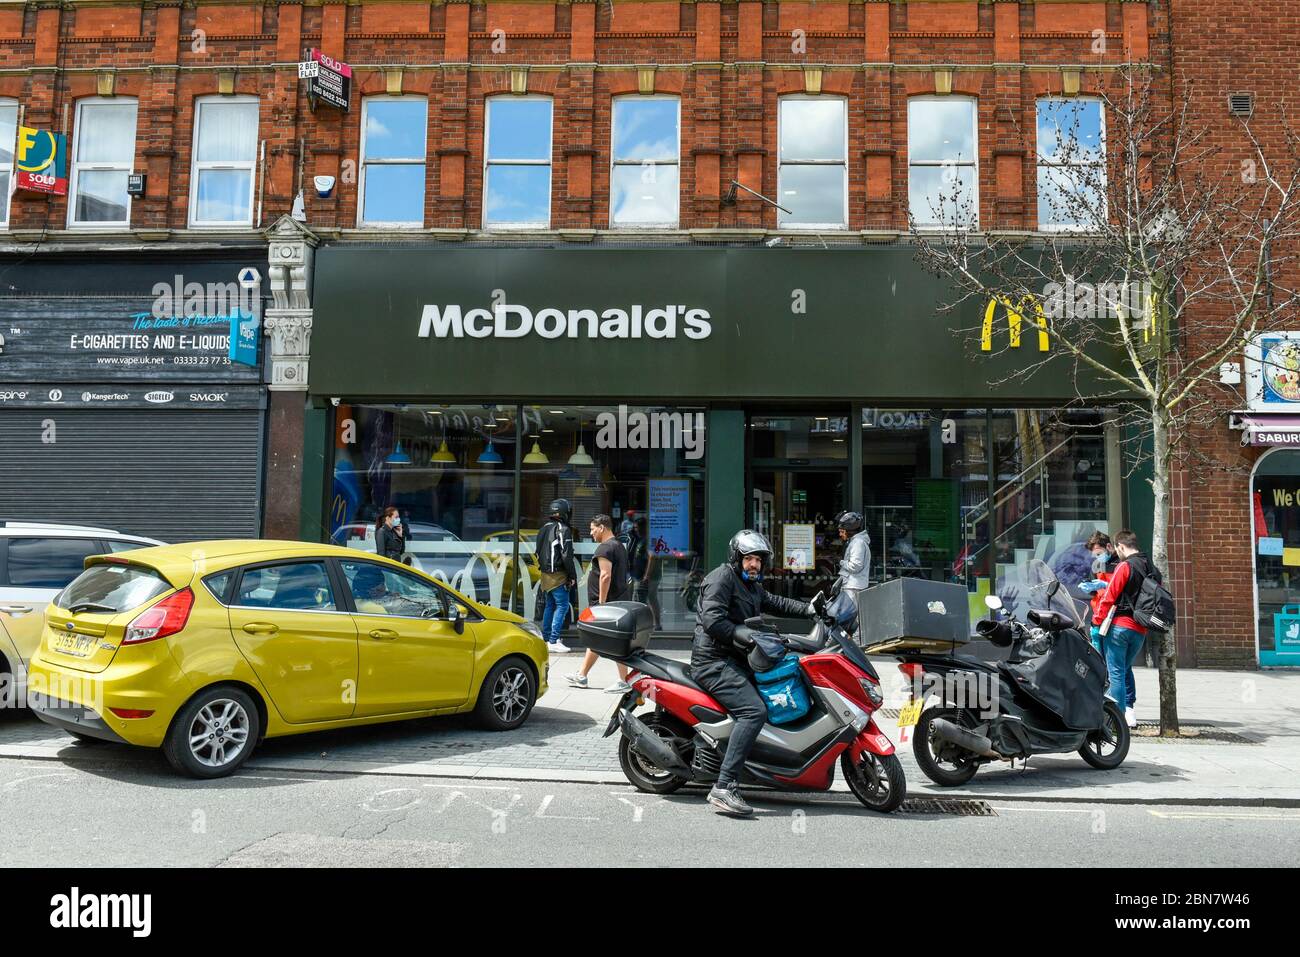 Londra, Regno Unito. 13 maggio 2020. Il ristorante fast food McDonald's di Harrow riapre per la "McDelivery" durante la pandemia di coronavirus in corso. Il ristorante e' uno dei 14 nel Regno Unito che la catena sta riaprendo parzialmente con un menu' limitato e solo consegna. La consegna è soddisfatta da terzi come Uber Eats e Deliveroo. Credit: Stephen Chung / Alamy Live News Foto Stock